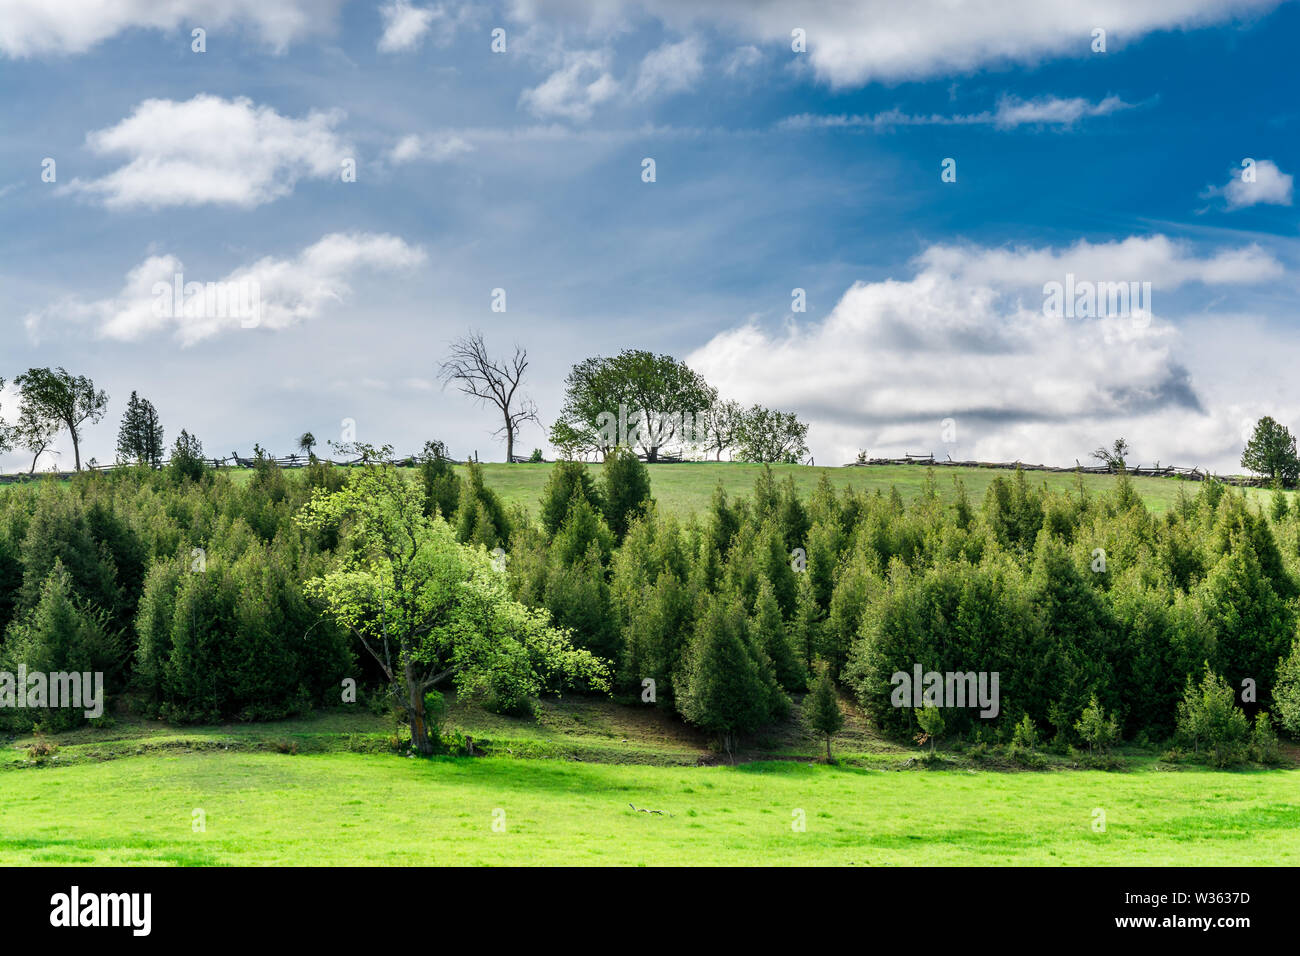 Scène rurale du début du printemps montrant un terrain vert herbacé avec des arbres verts frais et des verts à feuilles persistantes, le jour ensoleillé du ciel à contraste élevé Banque D'Images